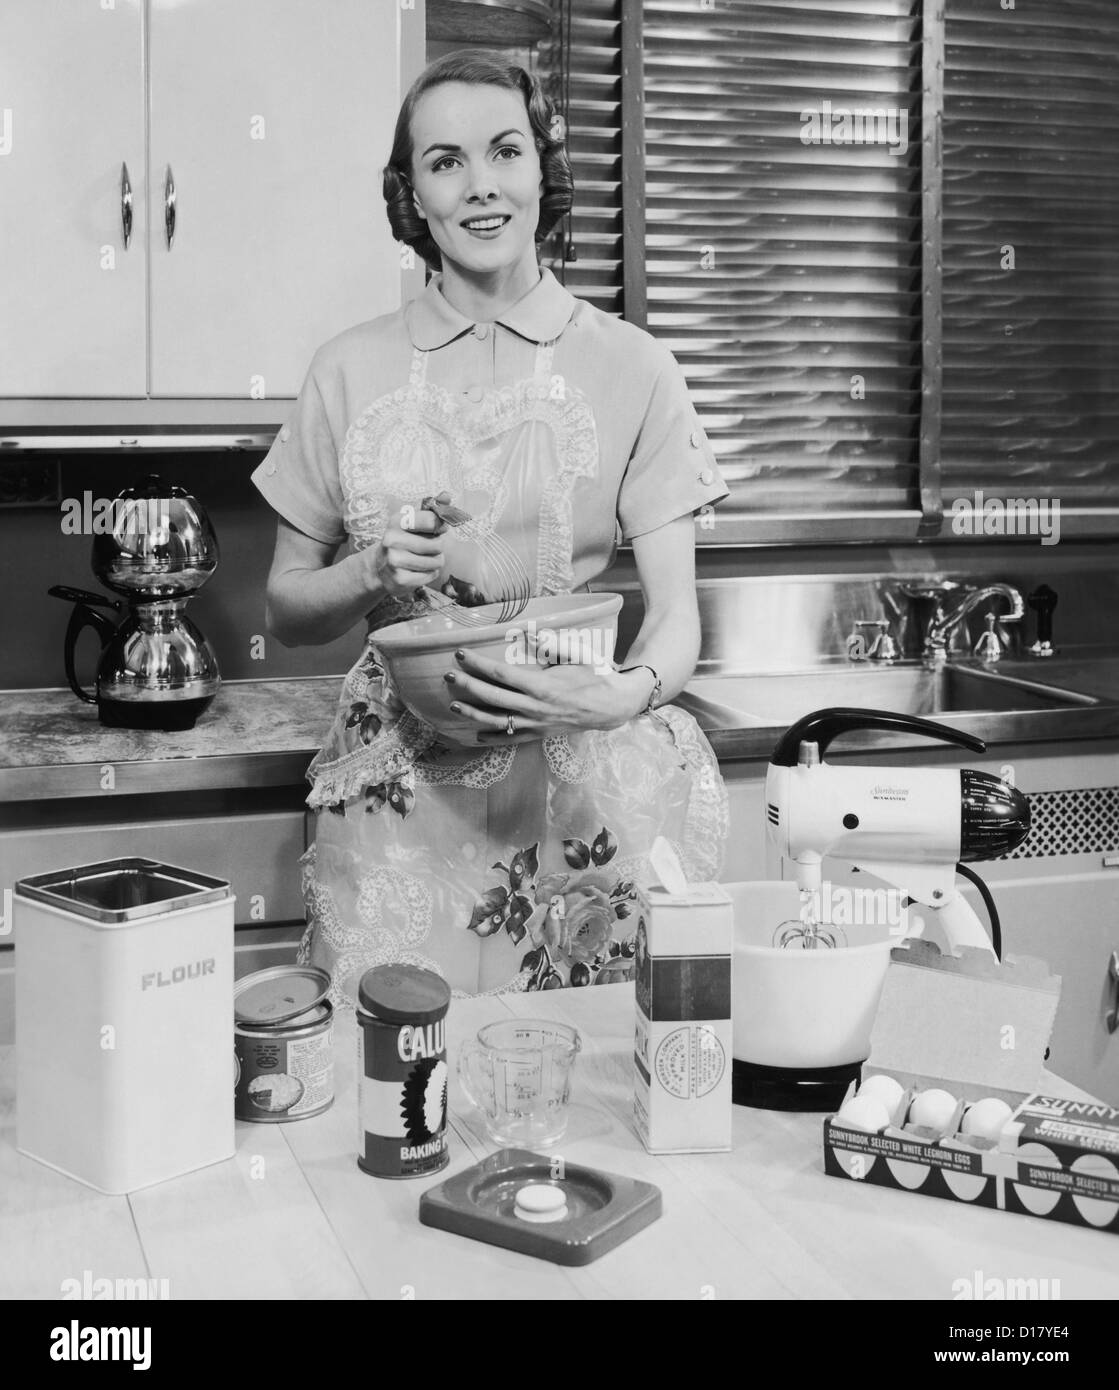 Frau mit Schürze in ihrer Küche Backen Stockfoto